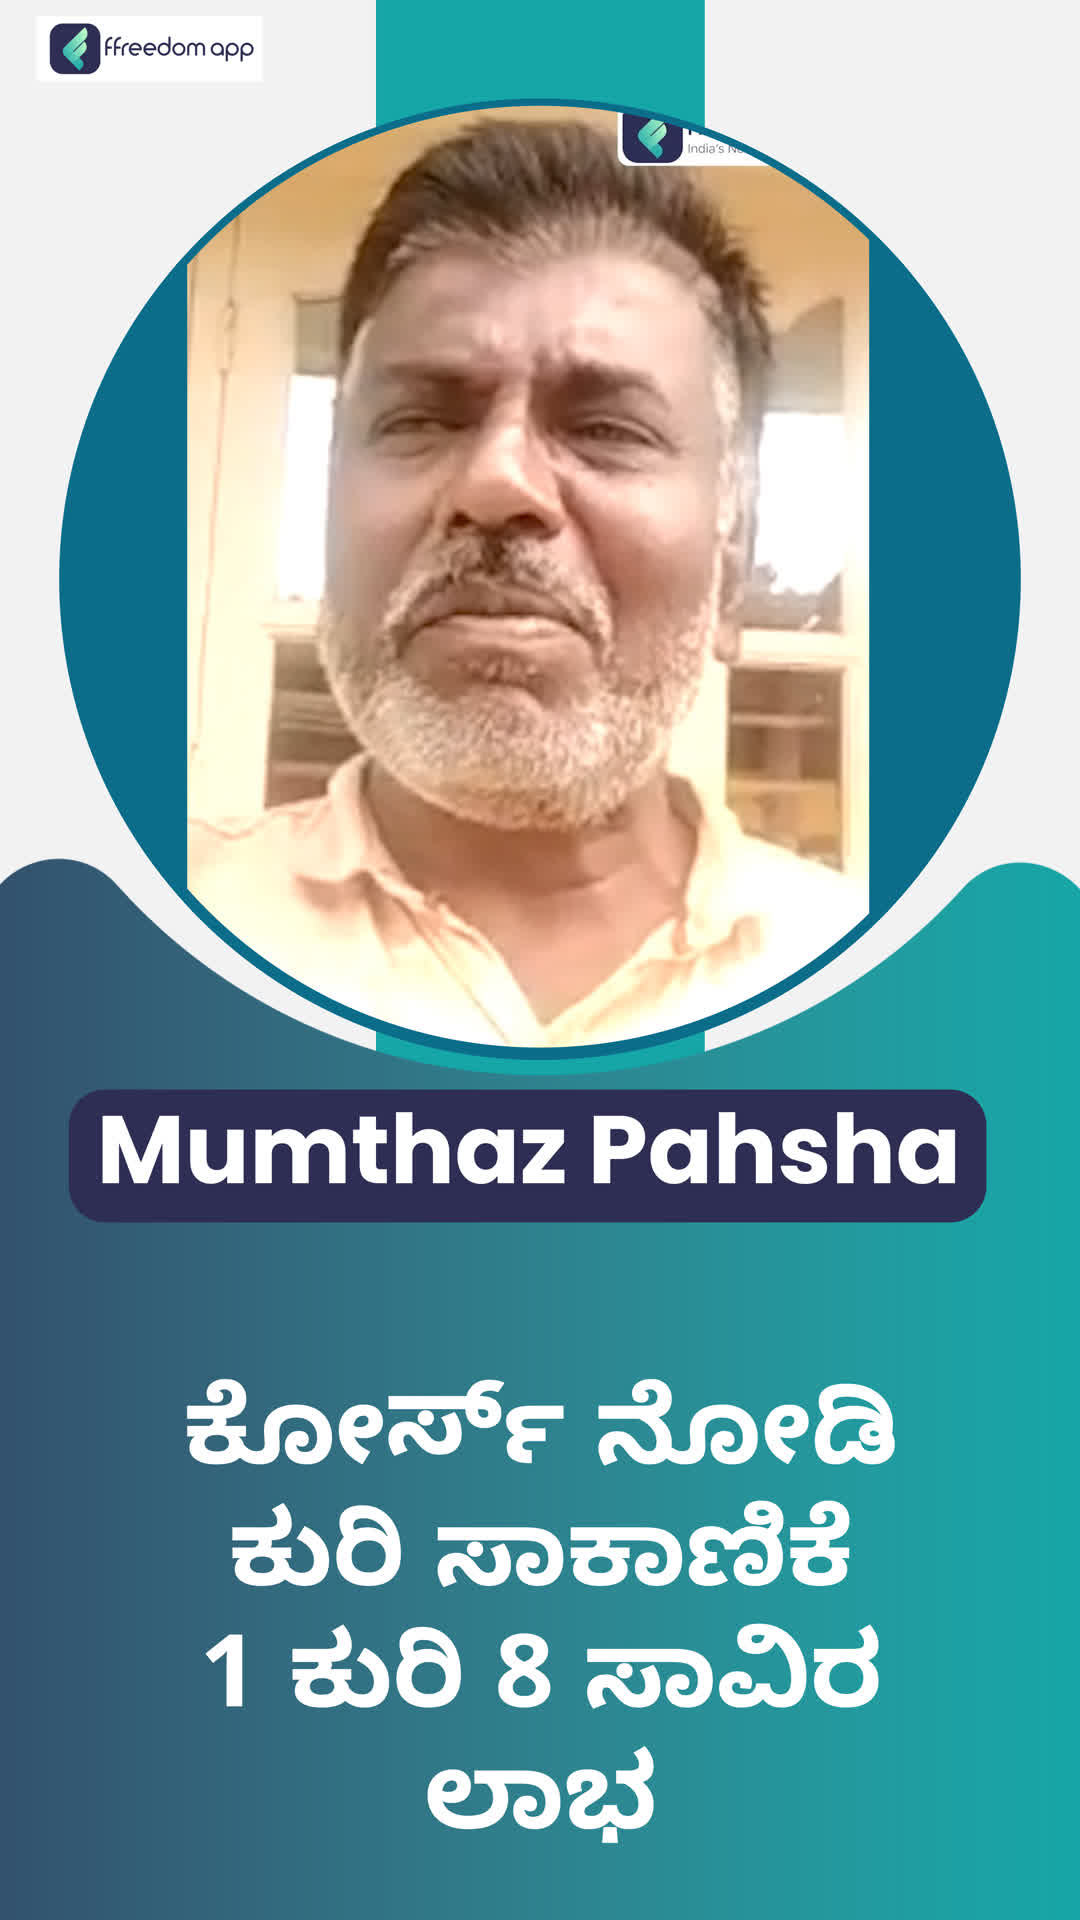 Mumthaj Pasha's Honest Review of ffreedom app - Hassan ,Karnataka